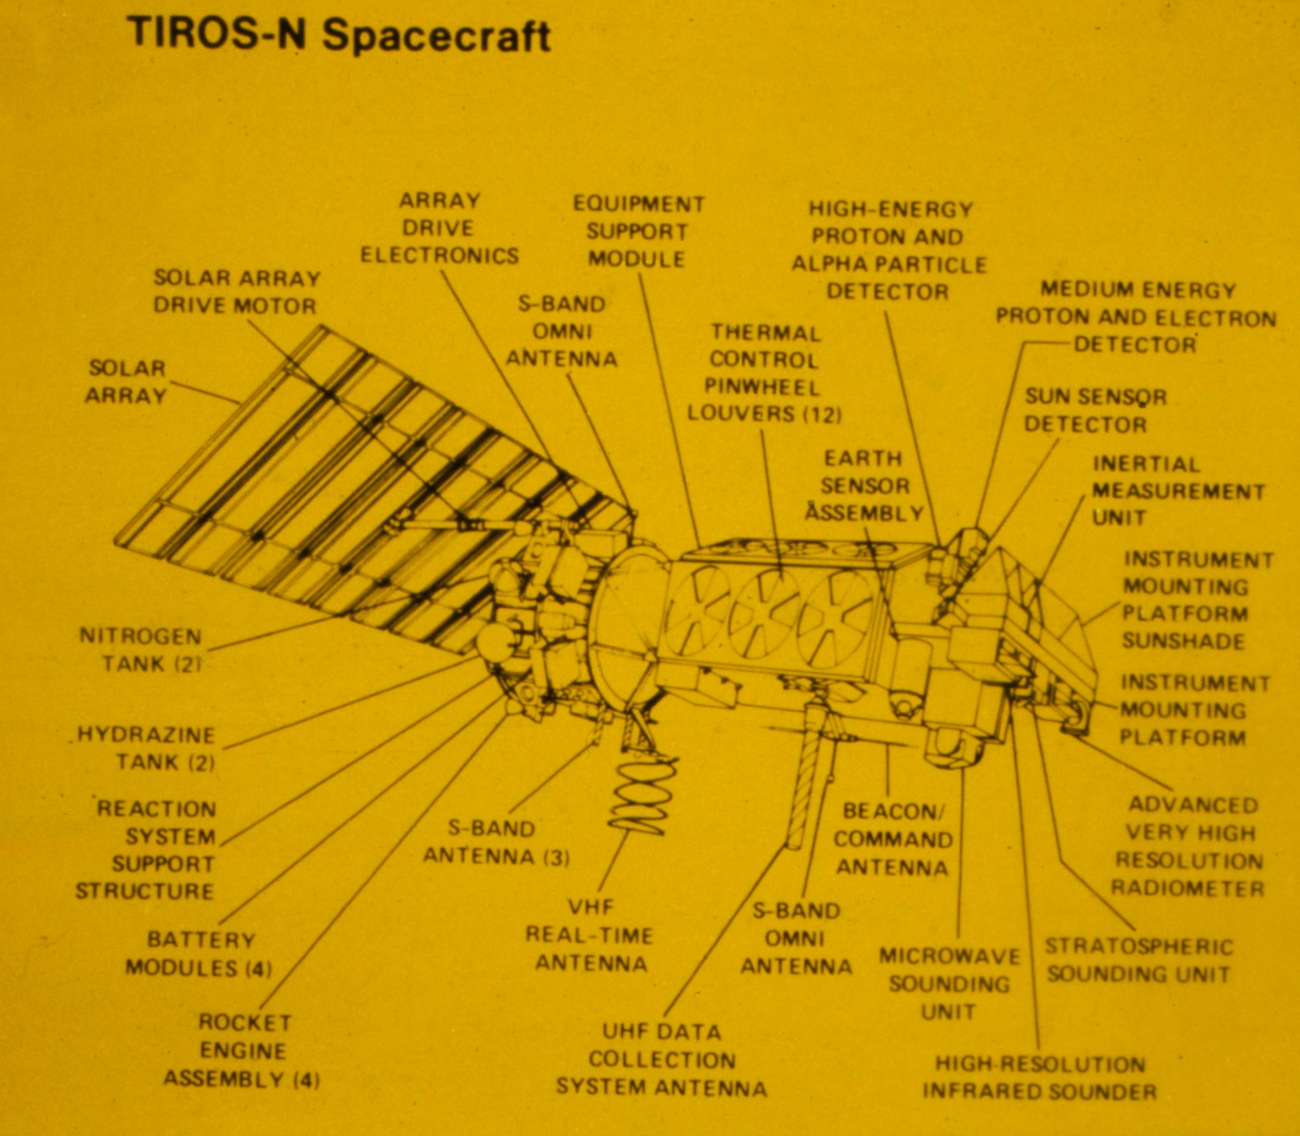 TIROS-N spacecraft diagram showing various sensor locations